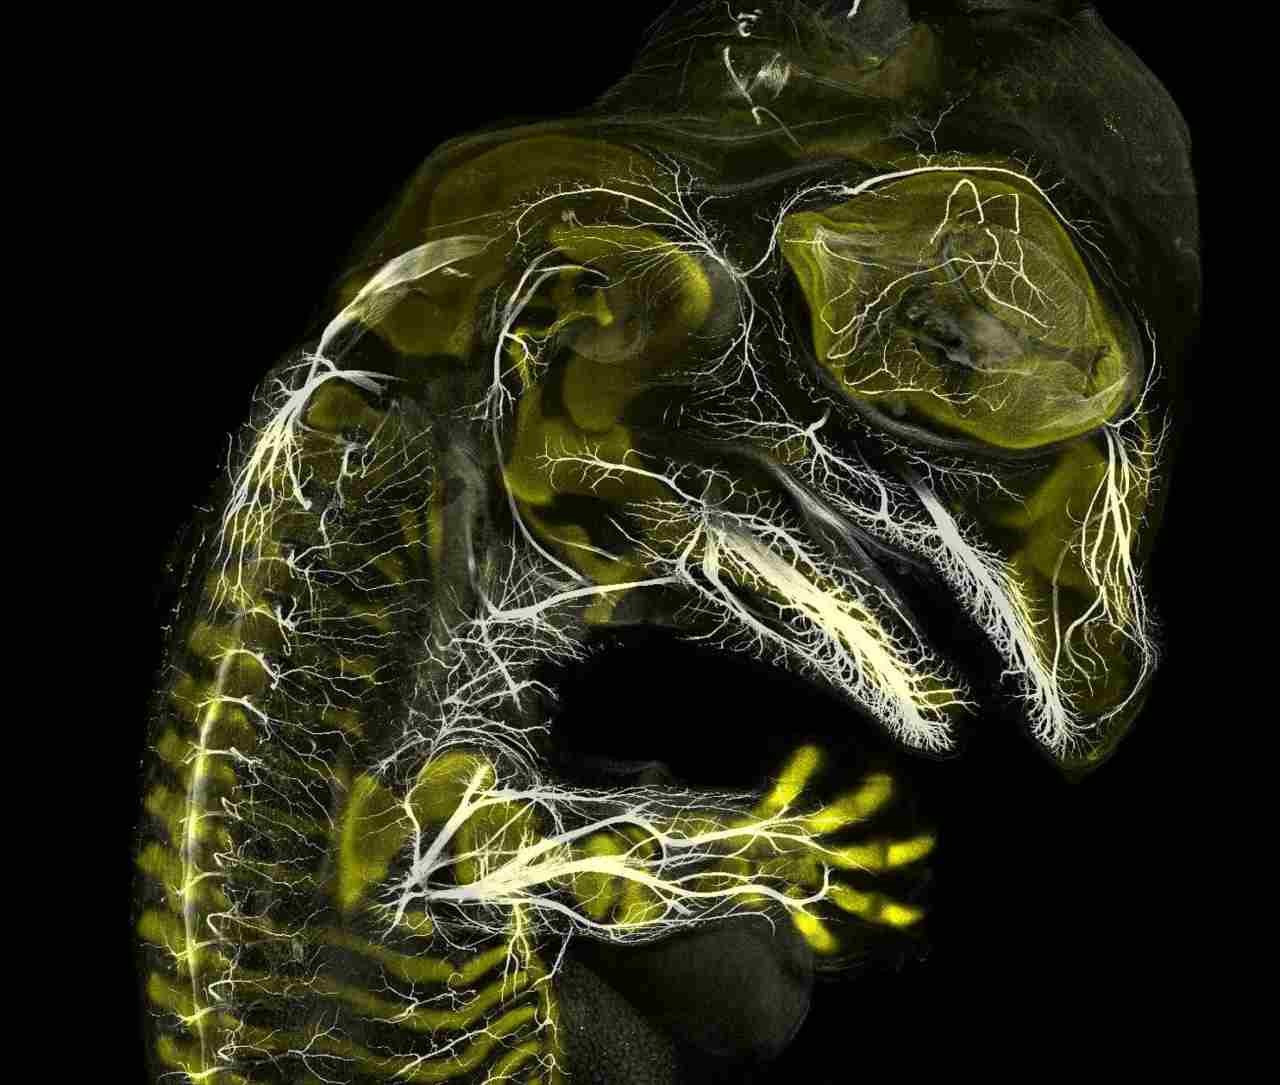 Alligator embryo developing nerves and skeleton ( do inglês, "embrião de jacaré desenvolvendo nervos e esqueleto") (Foto: Daniel Smith Paredes & Dr Bhart Anjan S Bhullar/Nikon Small World)